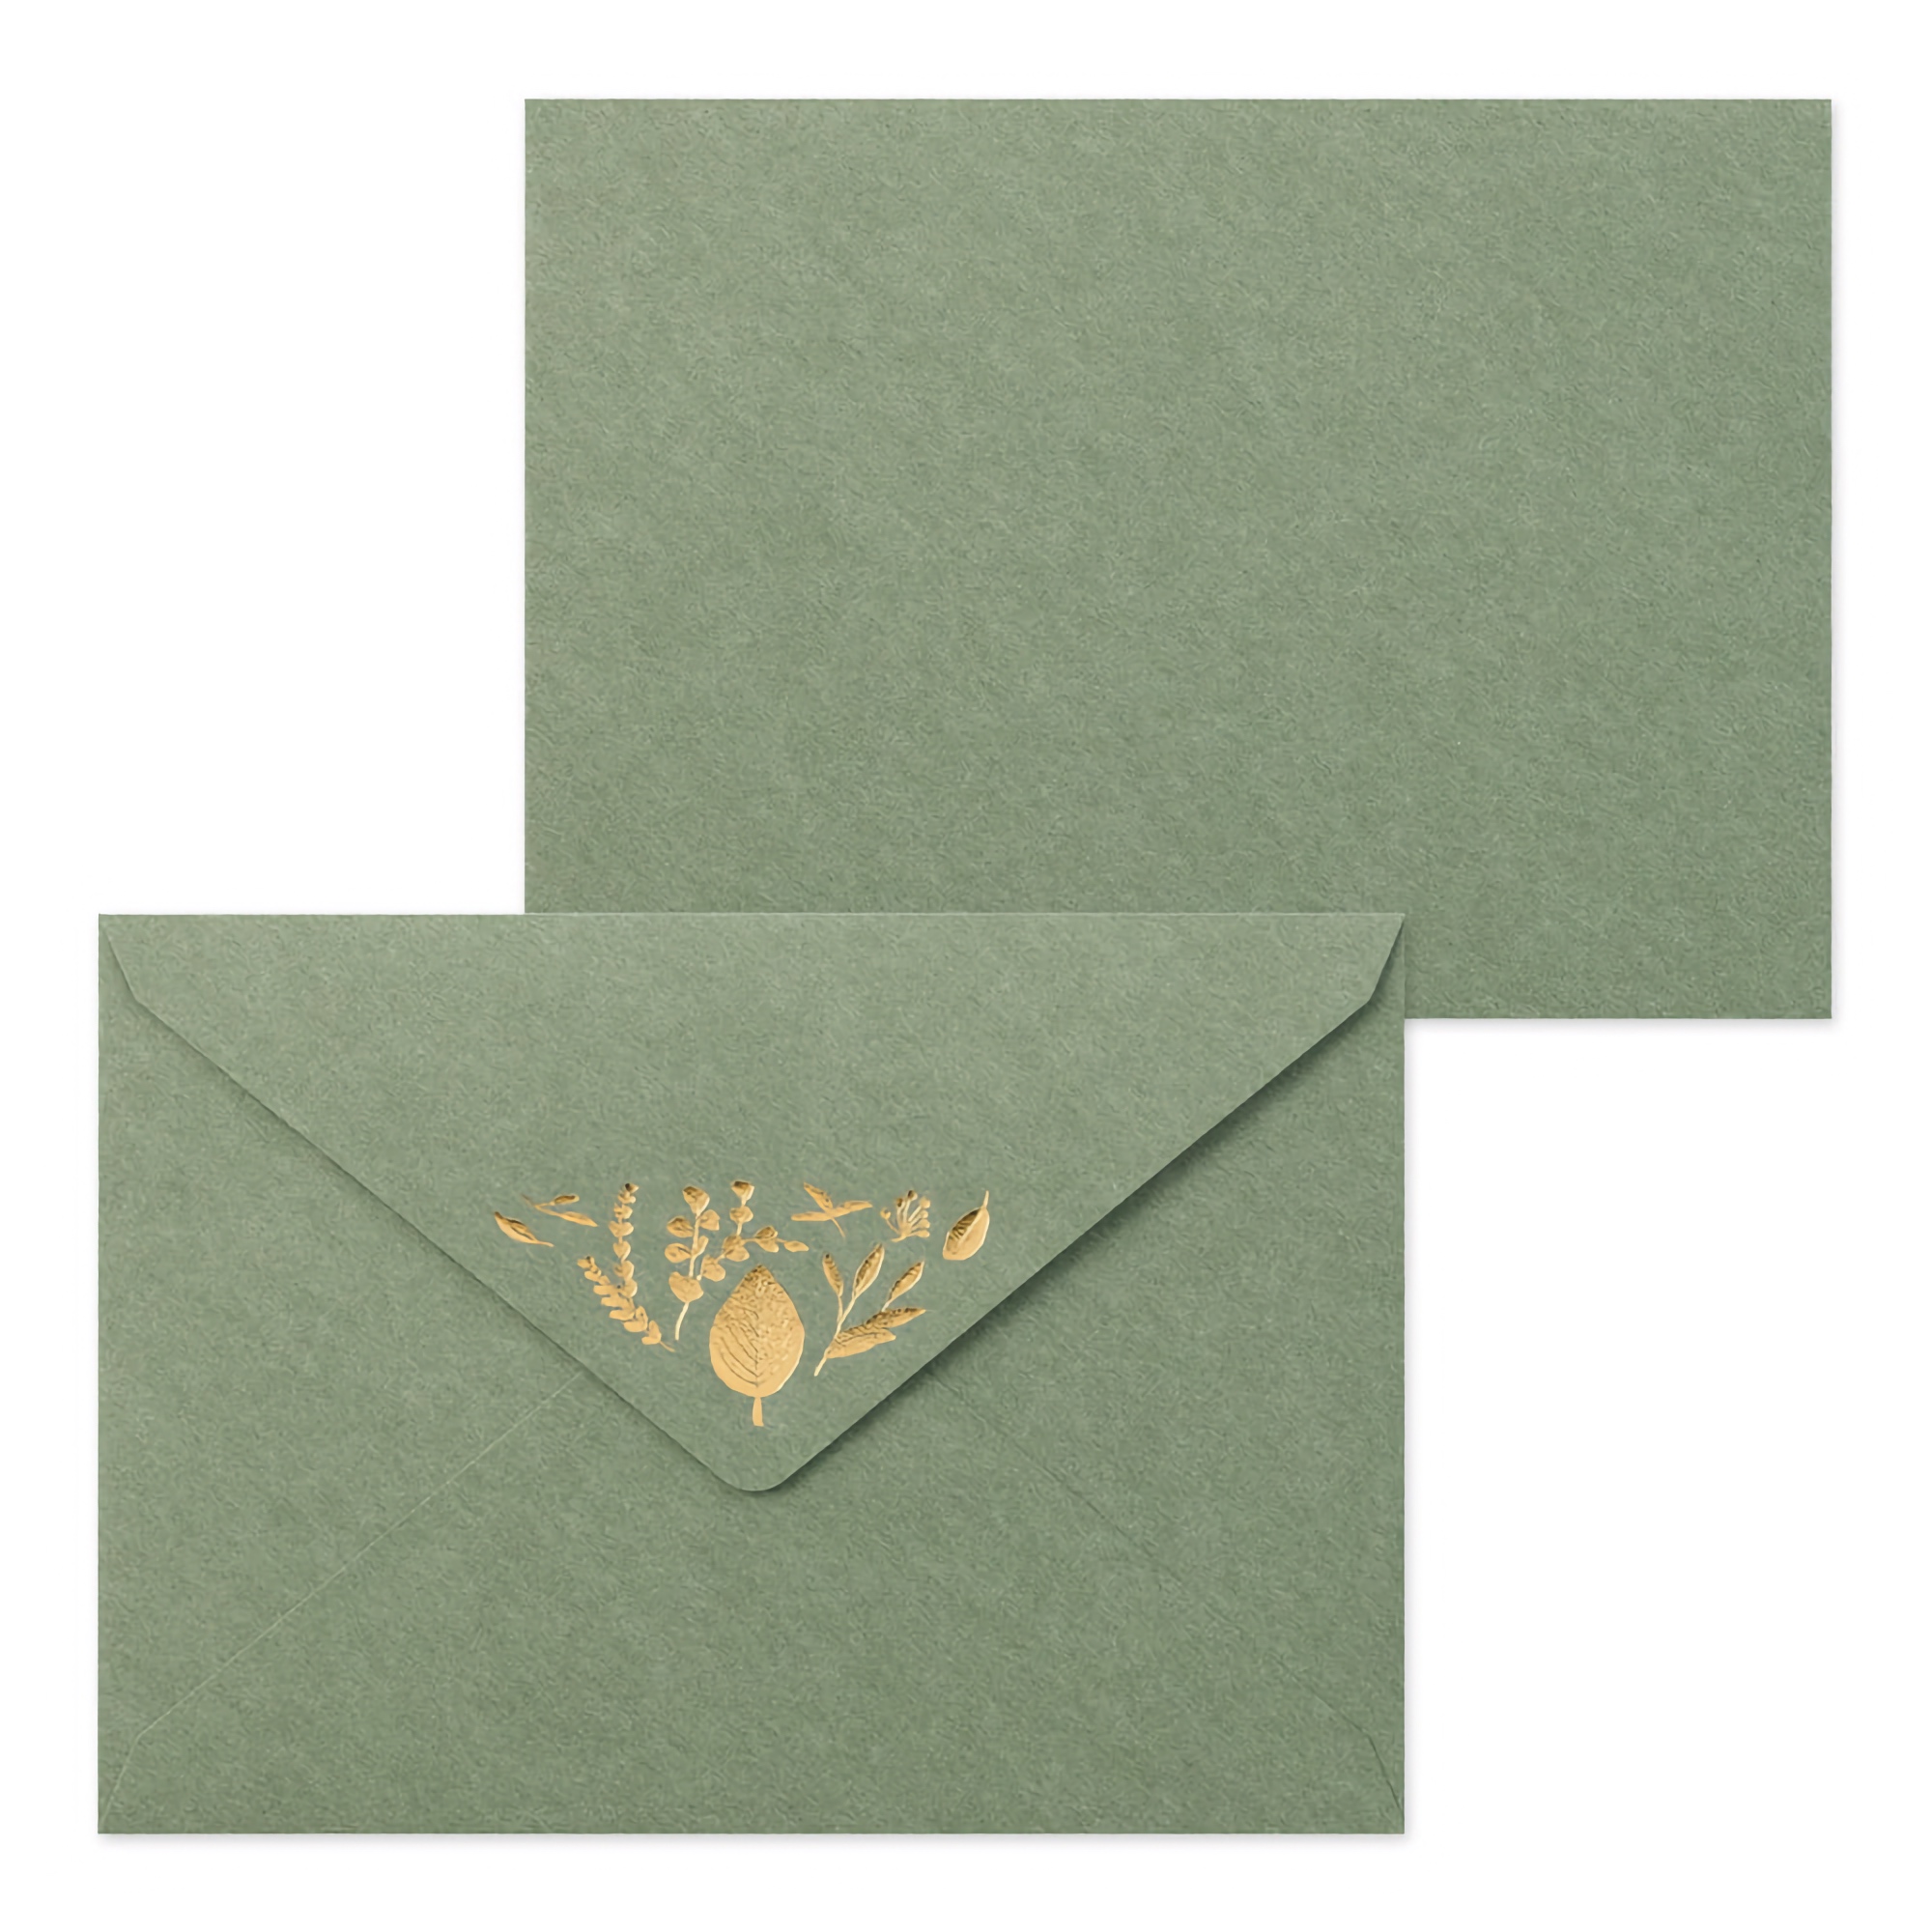 Midori Letter Set Foil-Stamped Envelopes Leaves